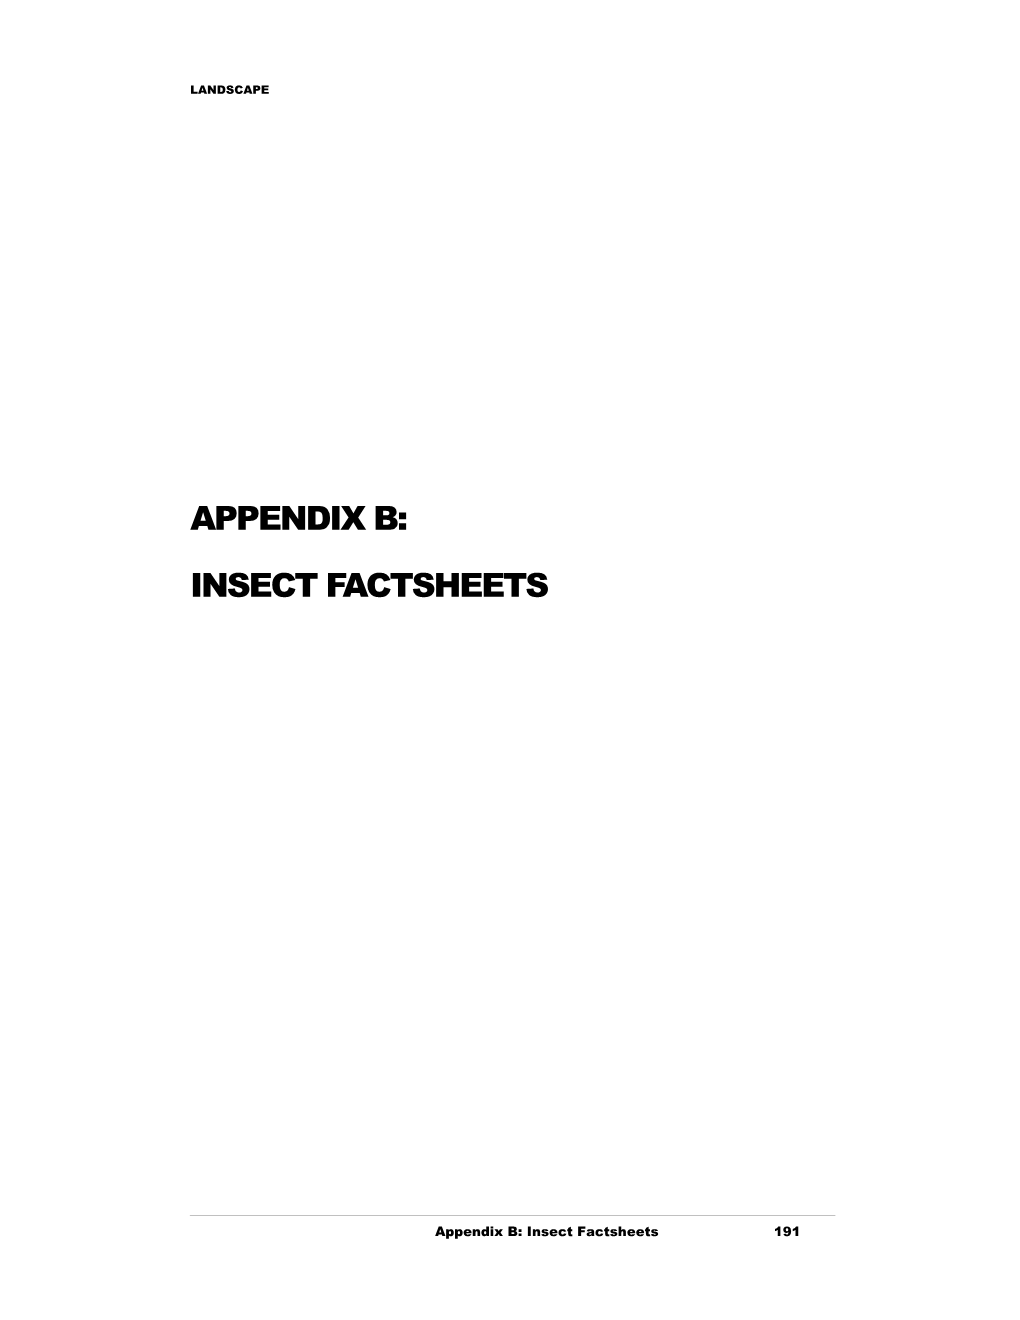 Appendix B: Insect Factsheets 191 LANDSCAPE